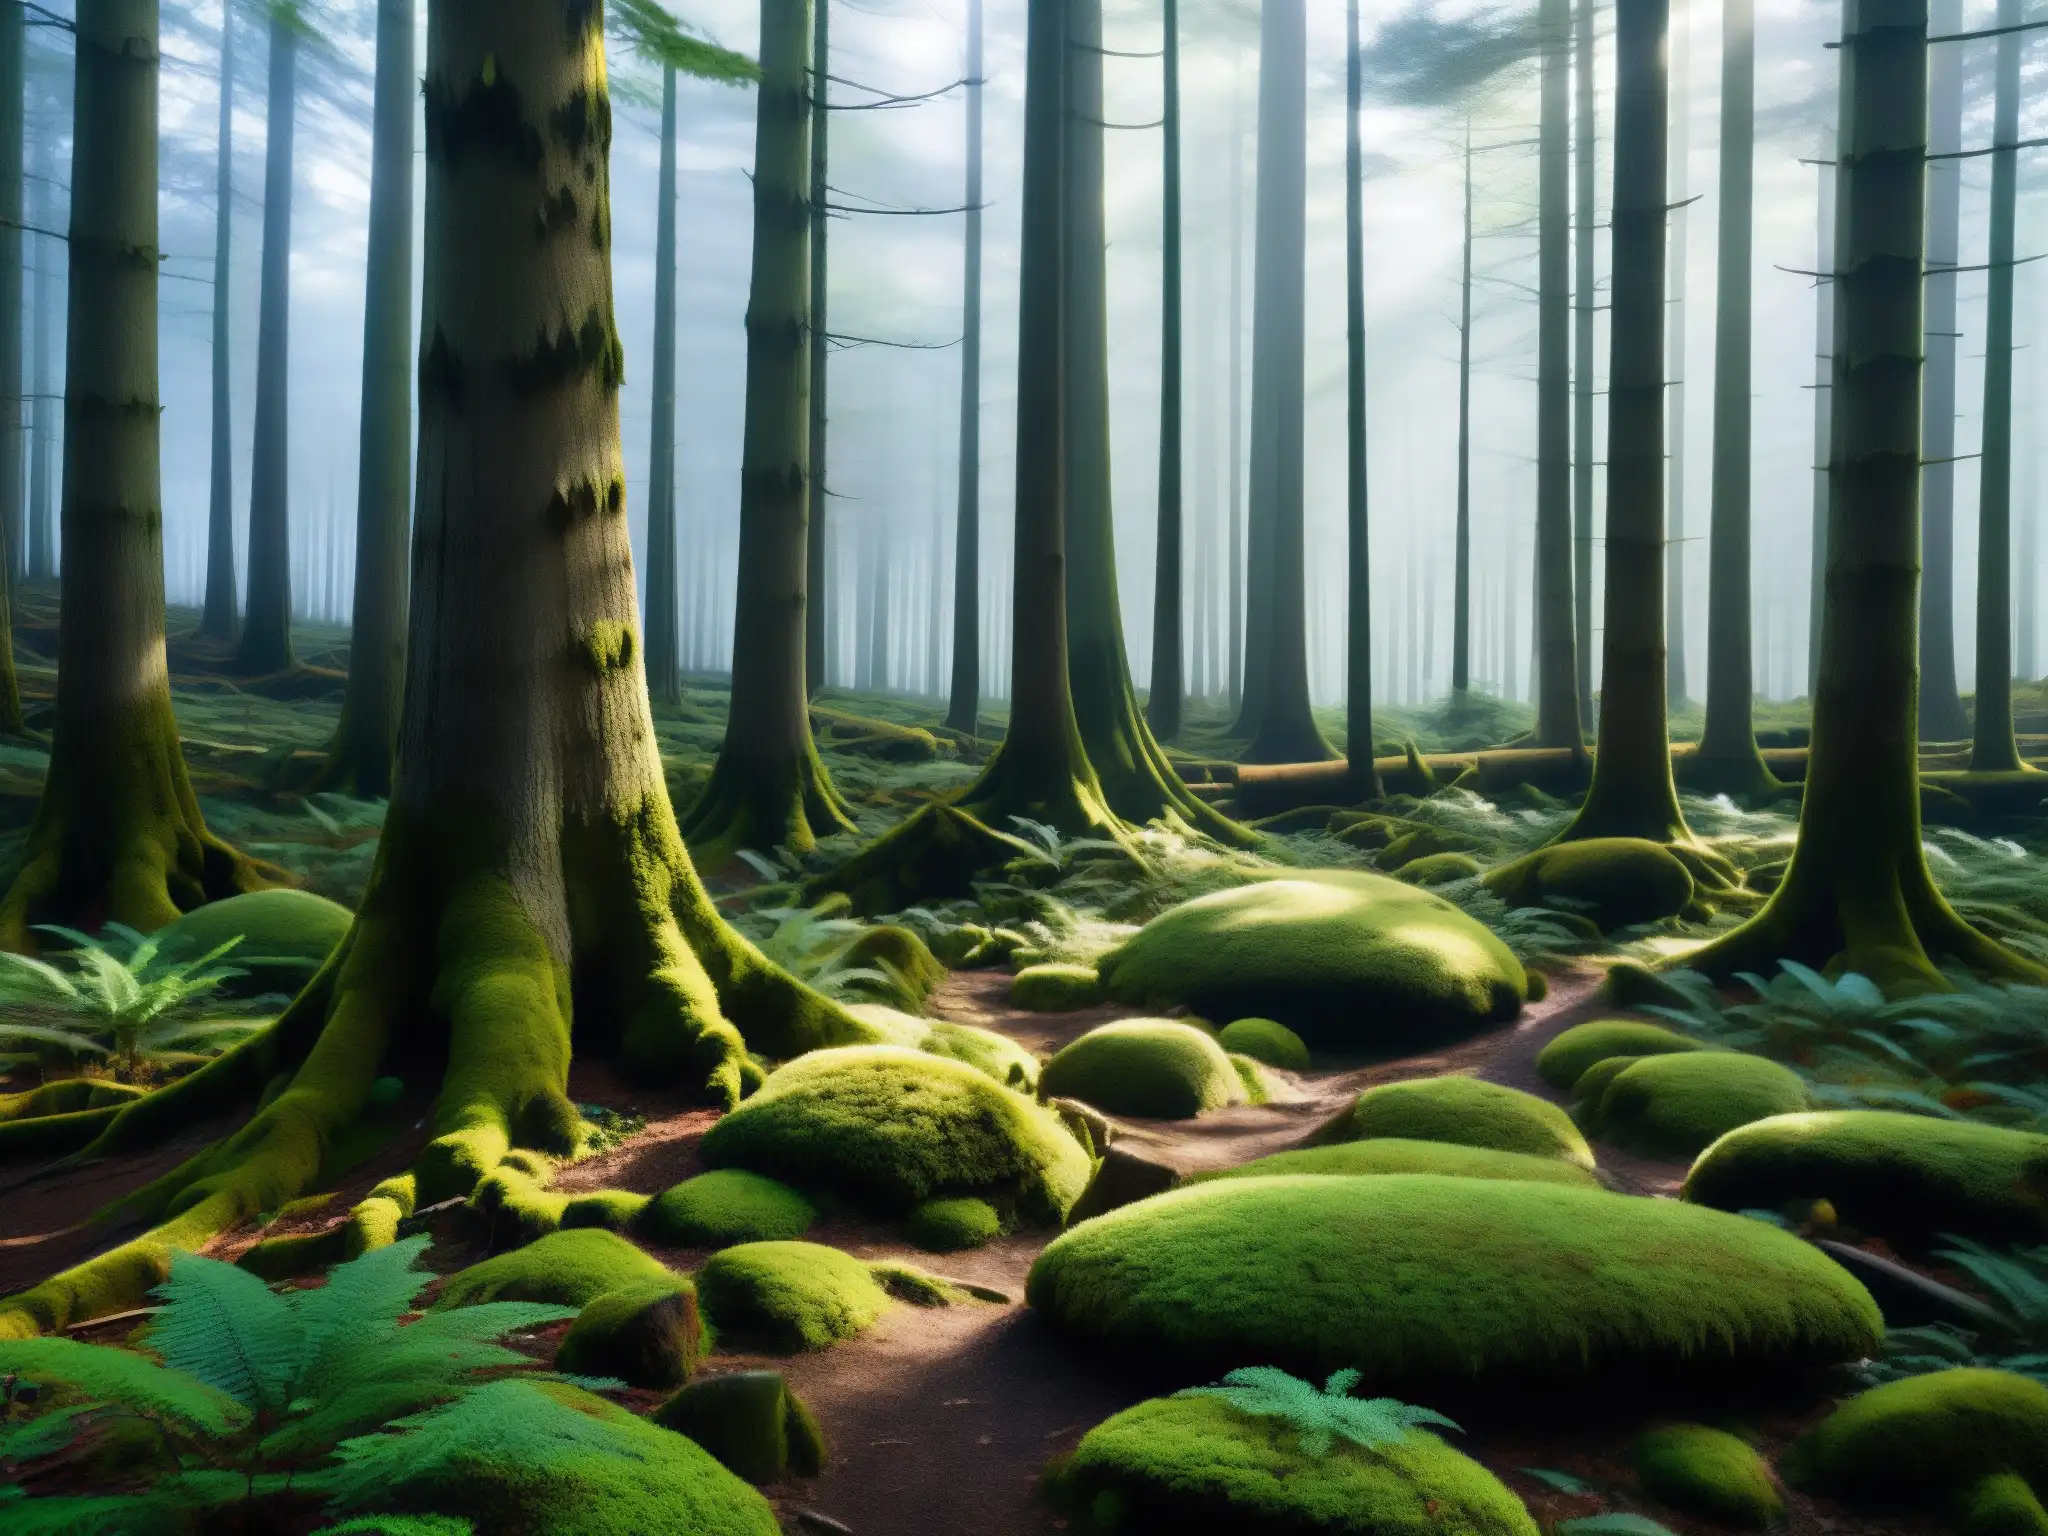 Misterioso bosque encantado de Aokigahara, con árboles imponentes y sombras intrincadas, crea una atmósfera mágica y misteriosa